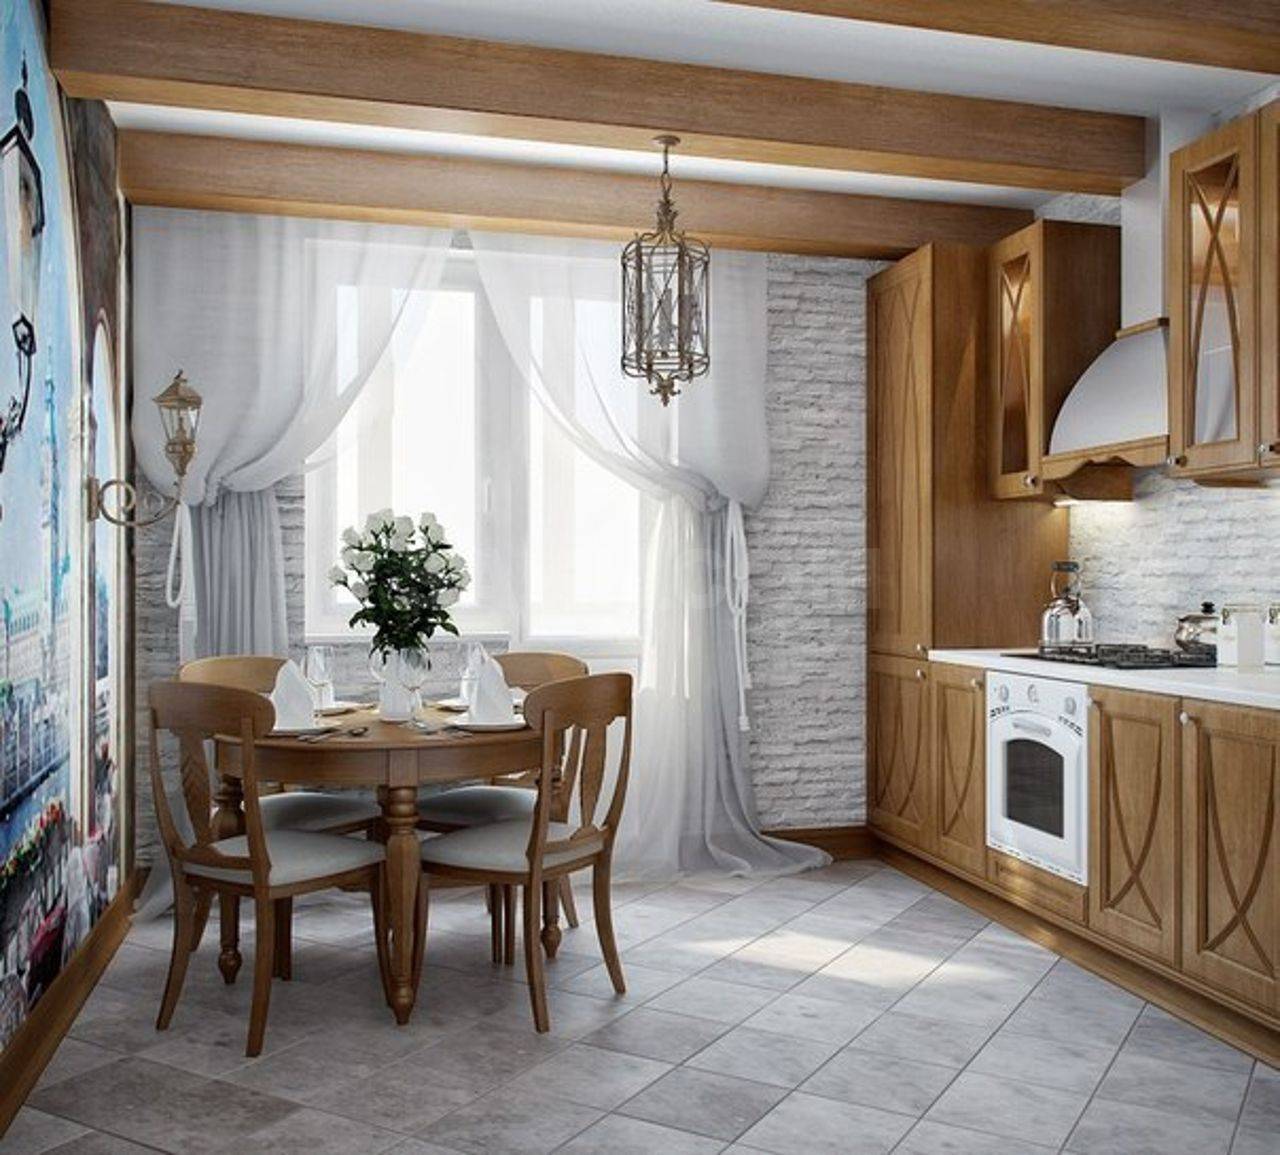 Кухня в русском стиле (5 фото): дизайн интерьера в народном стиле с хохломой, выбираем самовар для славянского интерьера